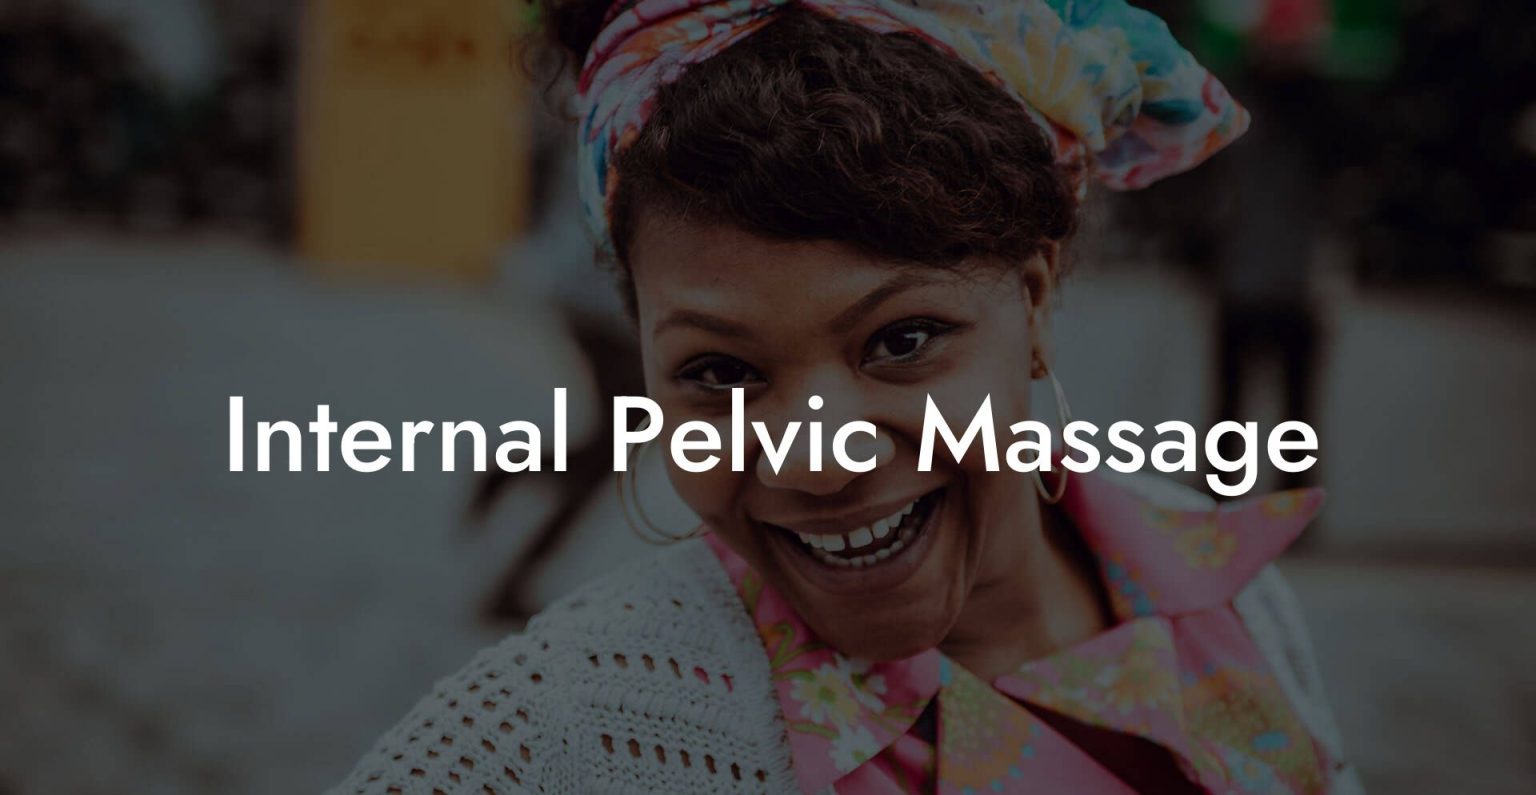 Internal Pelvic Massage Glutes Core And Pelvic Floor 2948